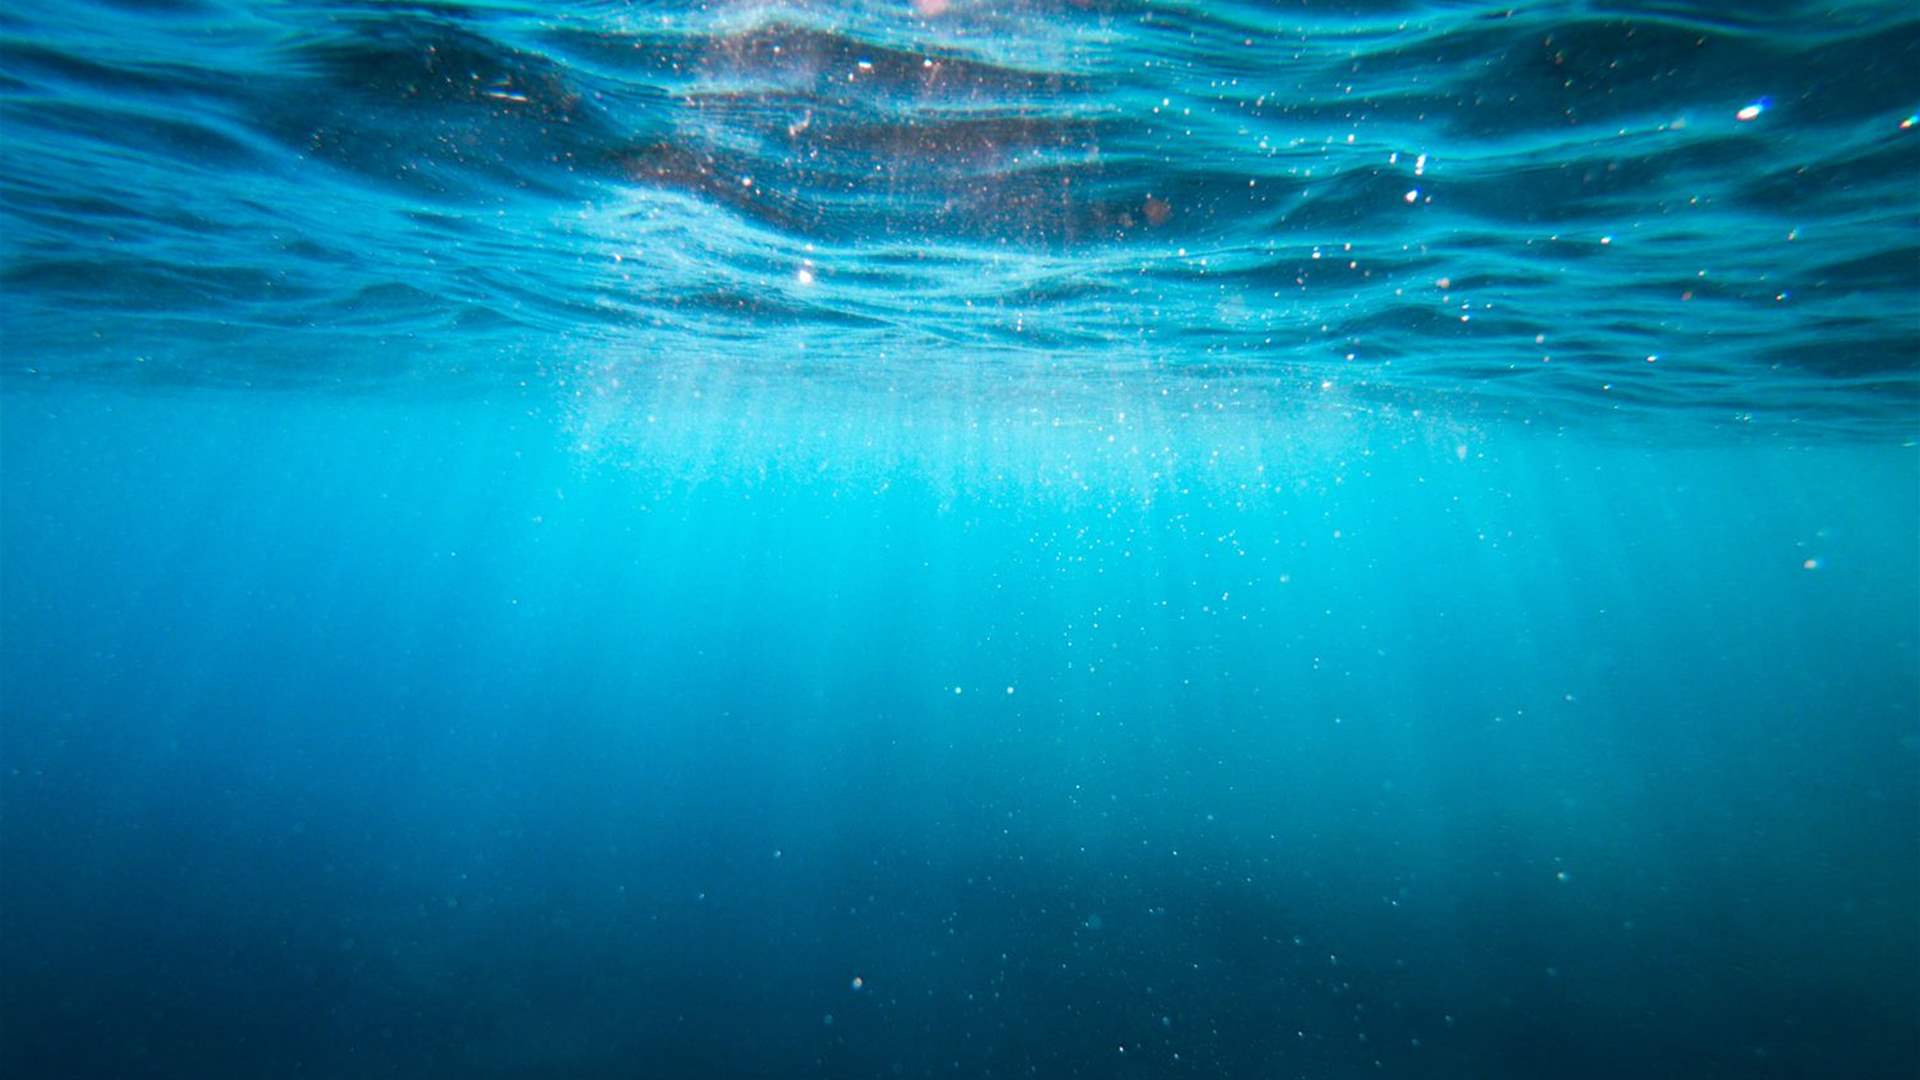 العلماء يكتشفون 4 جبال بحرية تحت الماء في هذا البلد... لن تصدقوا المخلوقات التي رصدوها! (فيديو)